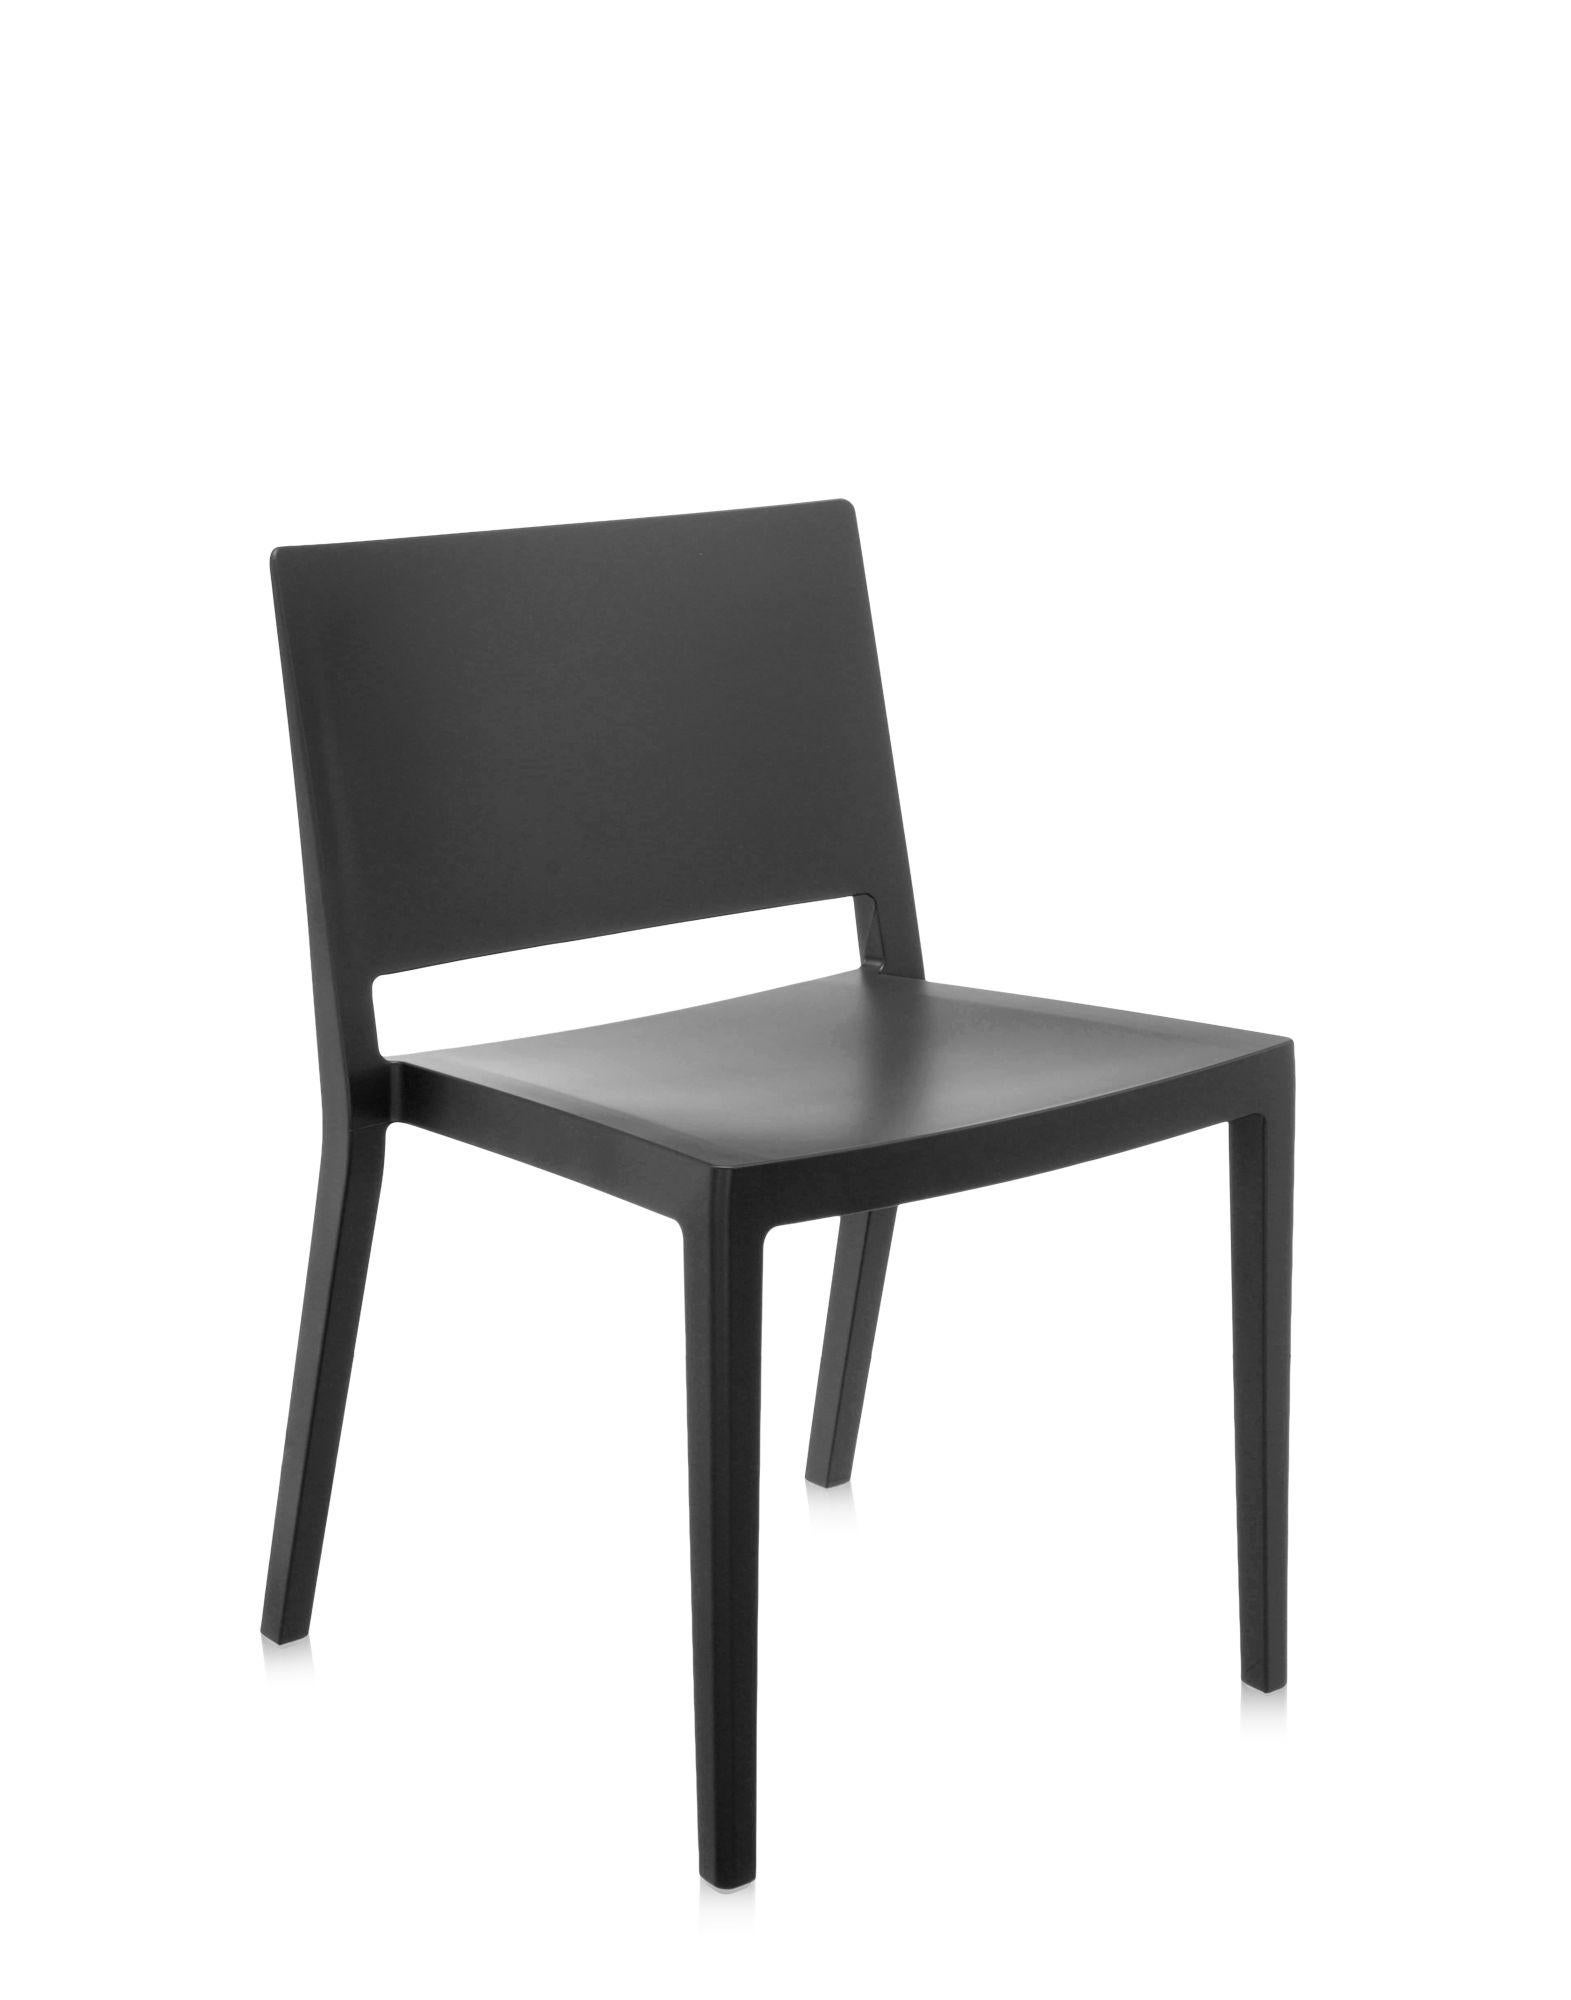 Ein leichter Stuhl mit essentiellen, strengen Linien, der dem minimalistischen und raffinierten Stil seines Designers Piero Lissoni entspricht. Lizz ist jetzt auch in einer matten Version mit sechs Farben erhältlich, die an das typisch